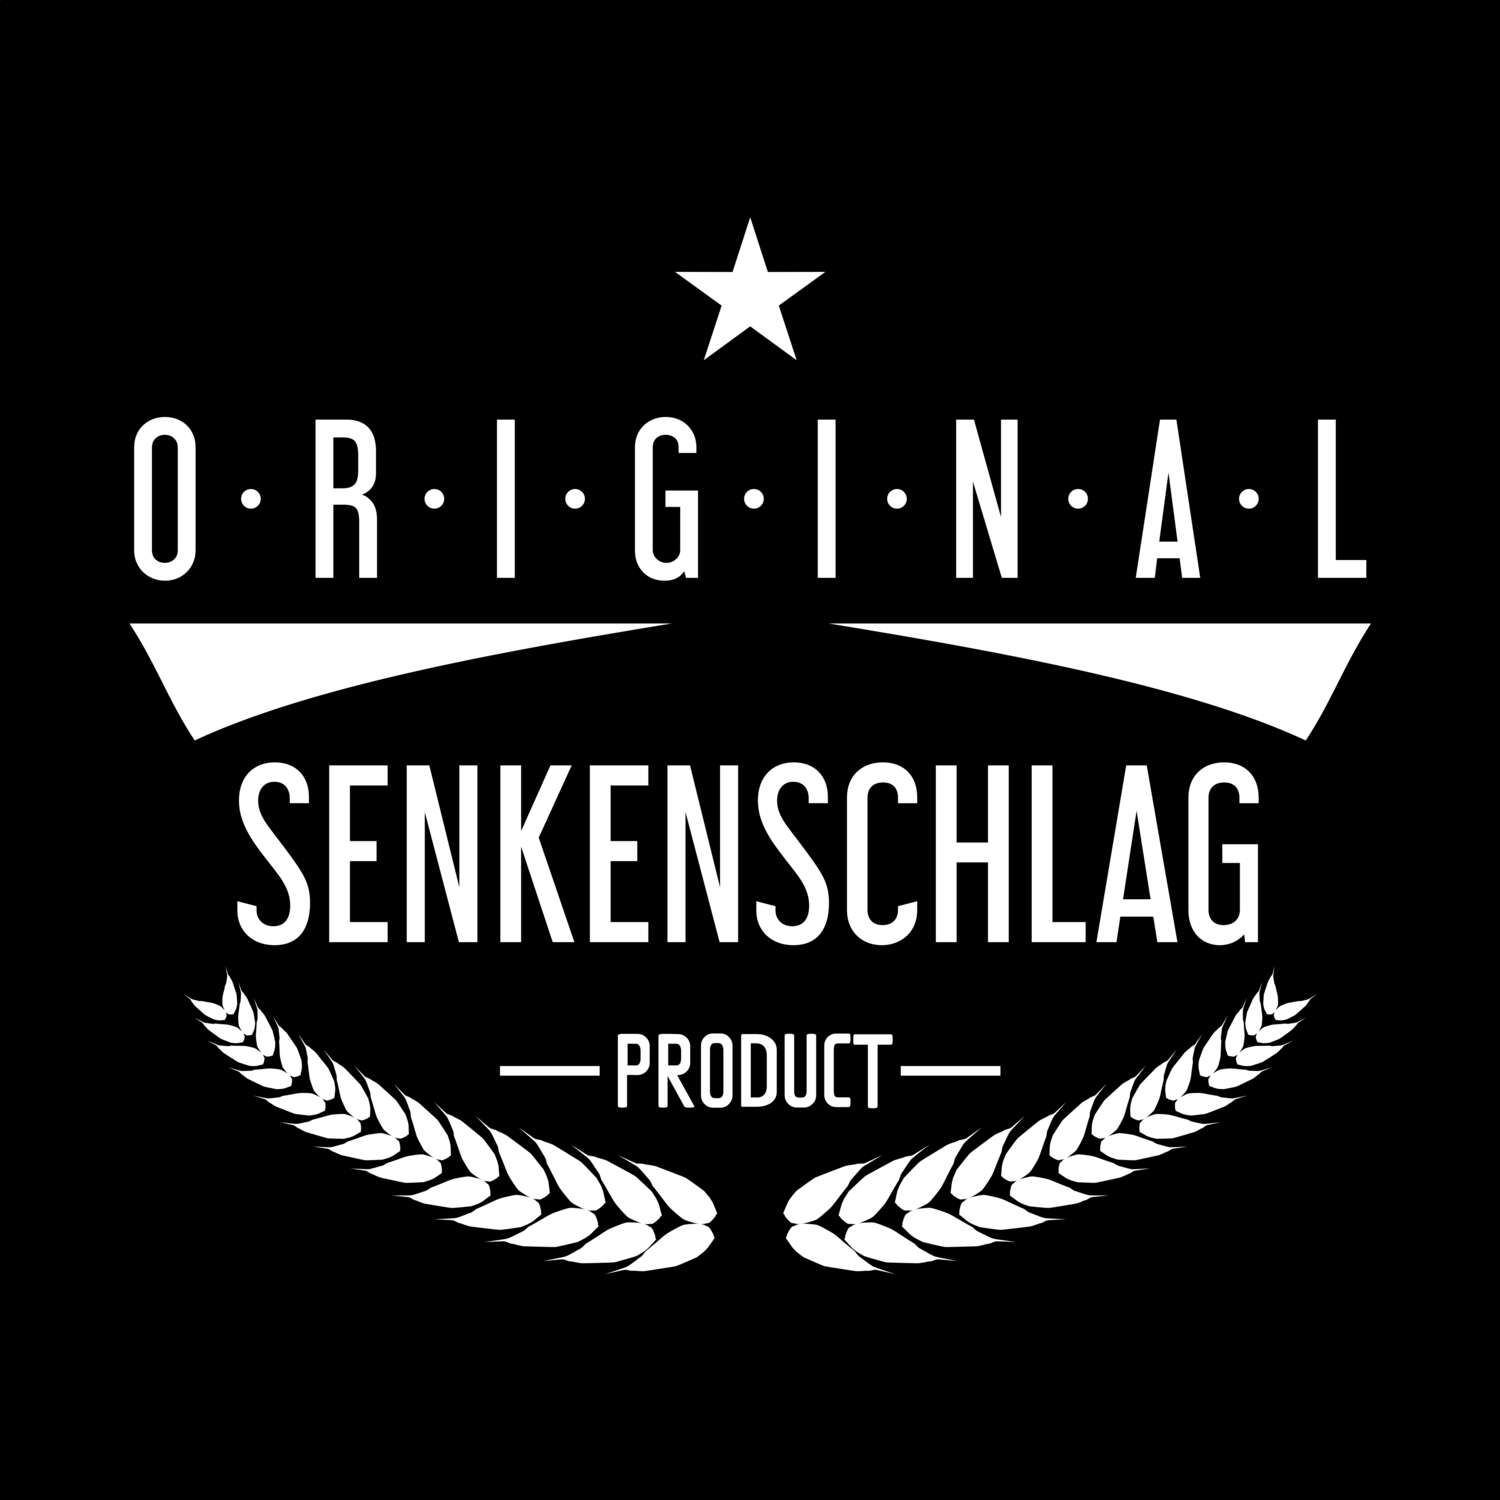 Senkenschlag T-Shirt »Original Product«